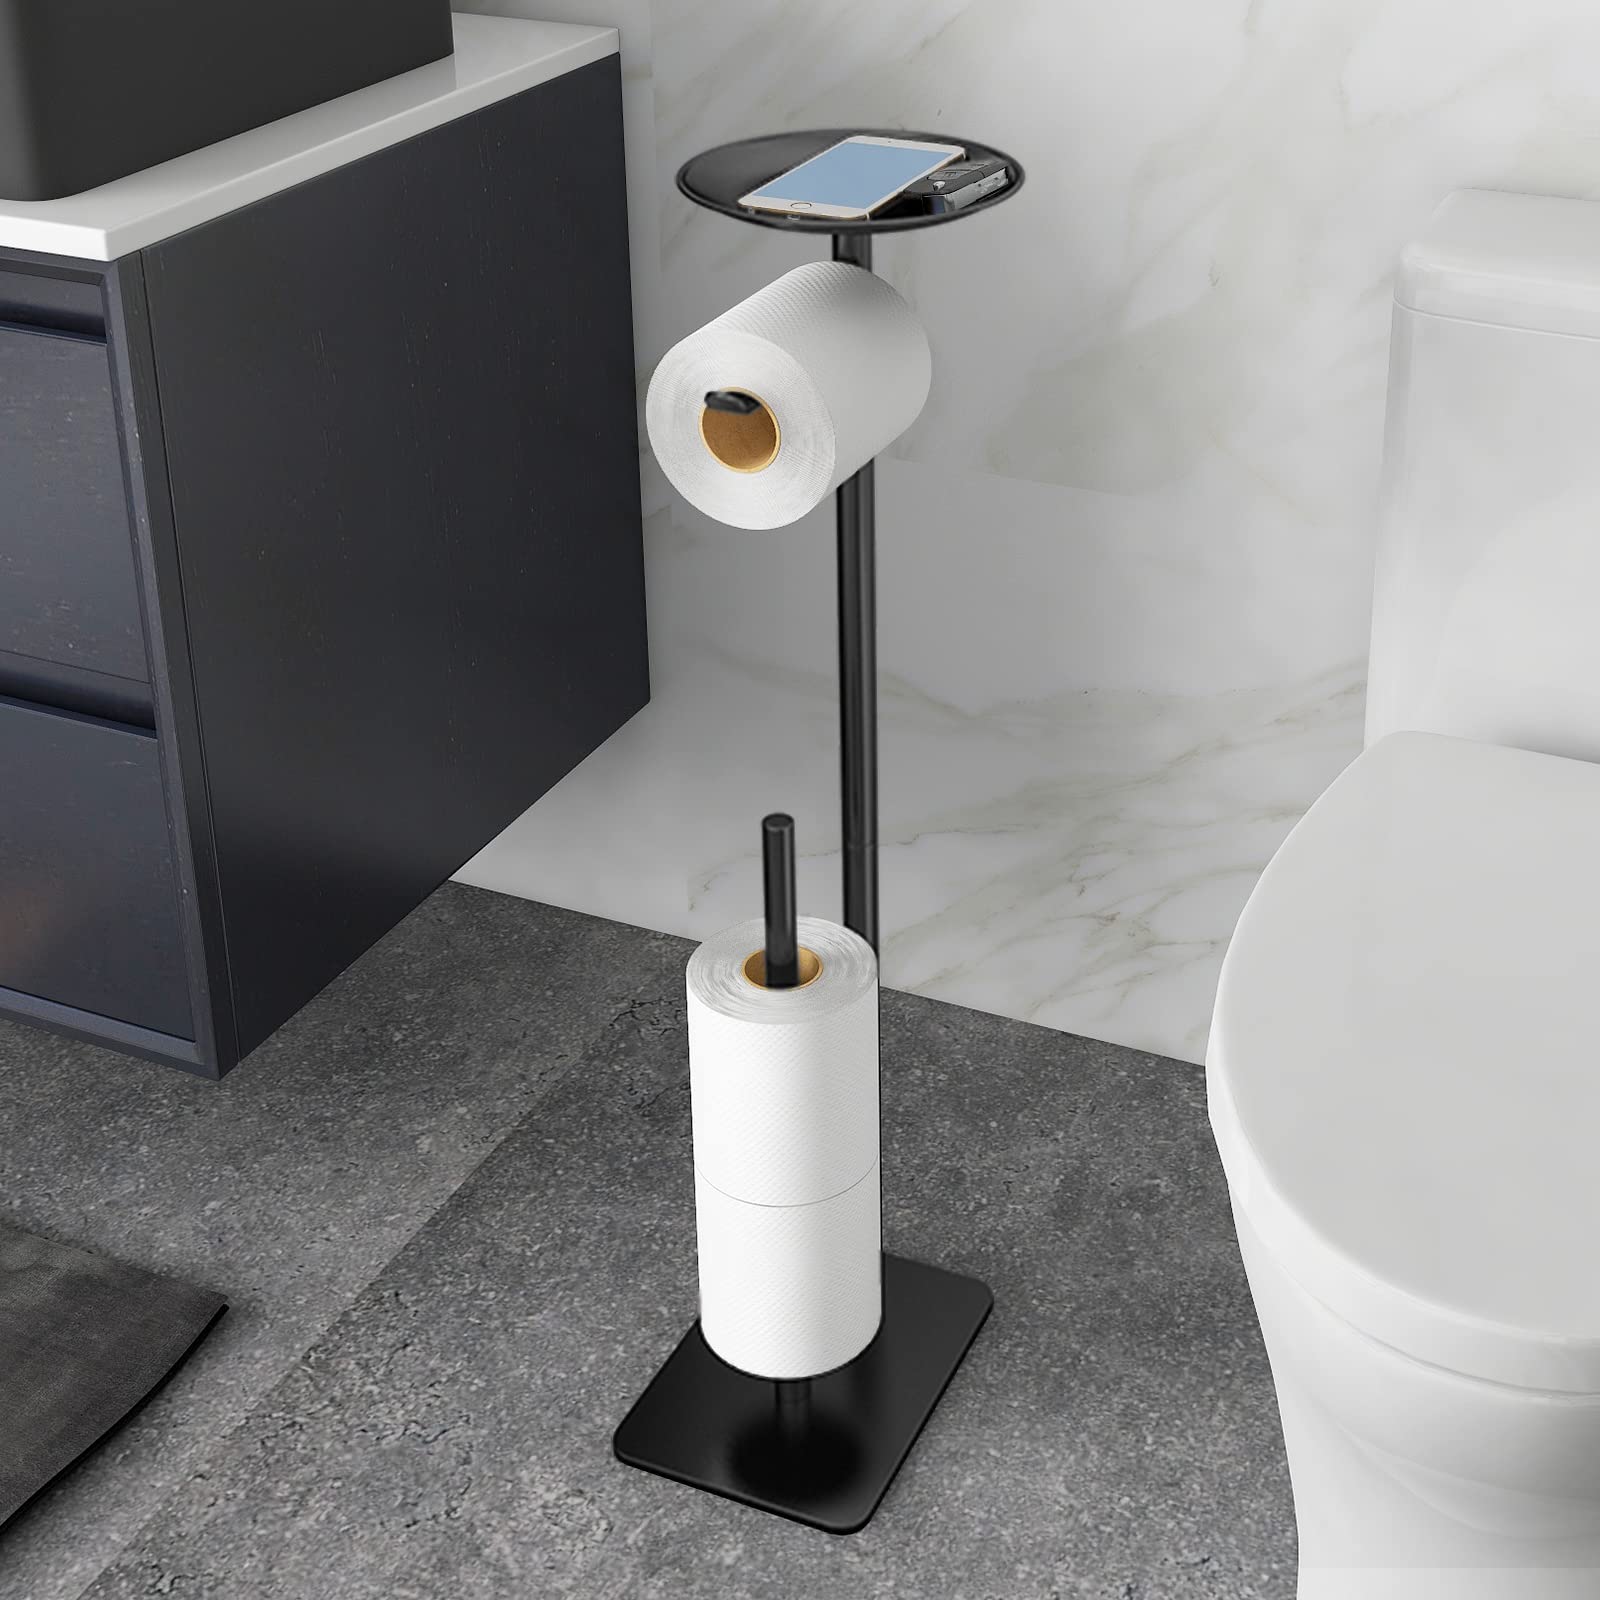 FEILERN Toilet Paper Holder Stand for Bathroom Floor Standing Toilet Roll  Dispenser Storages 4 Reserve Rolls